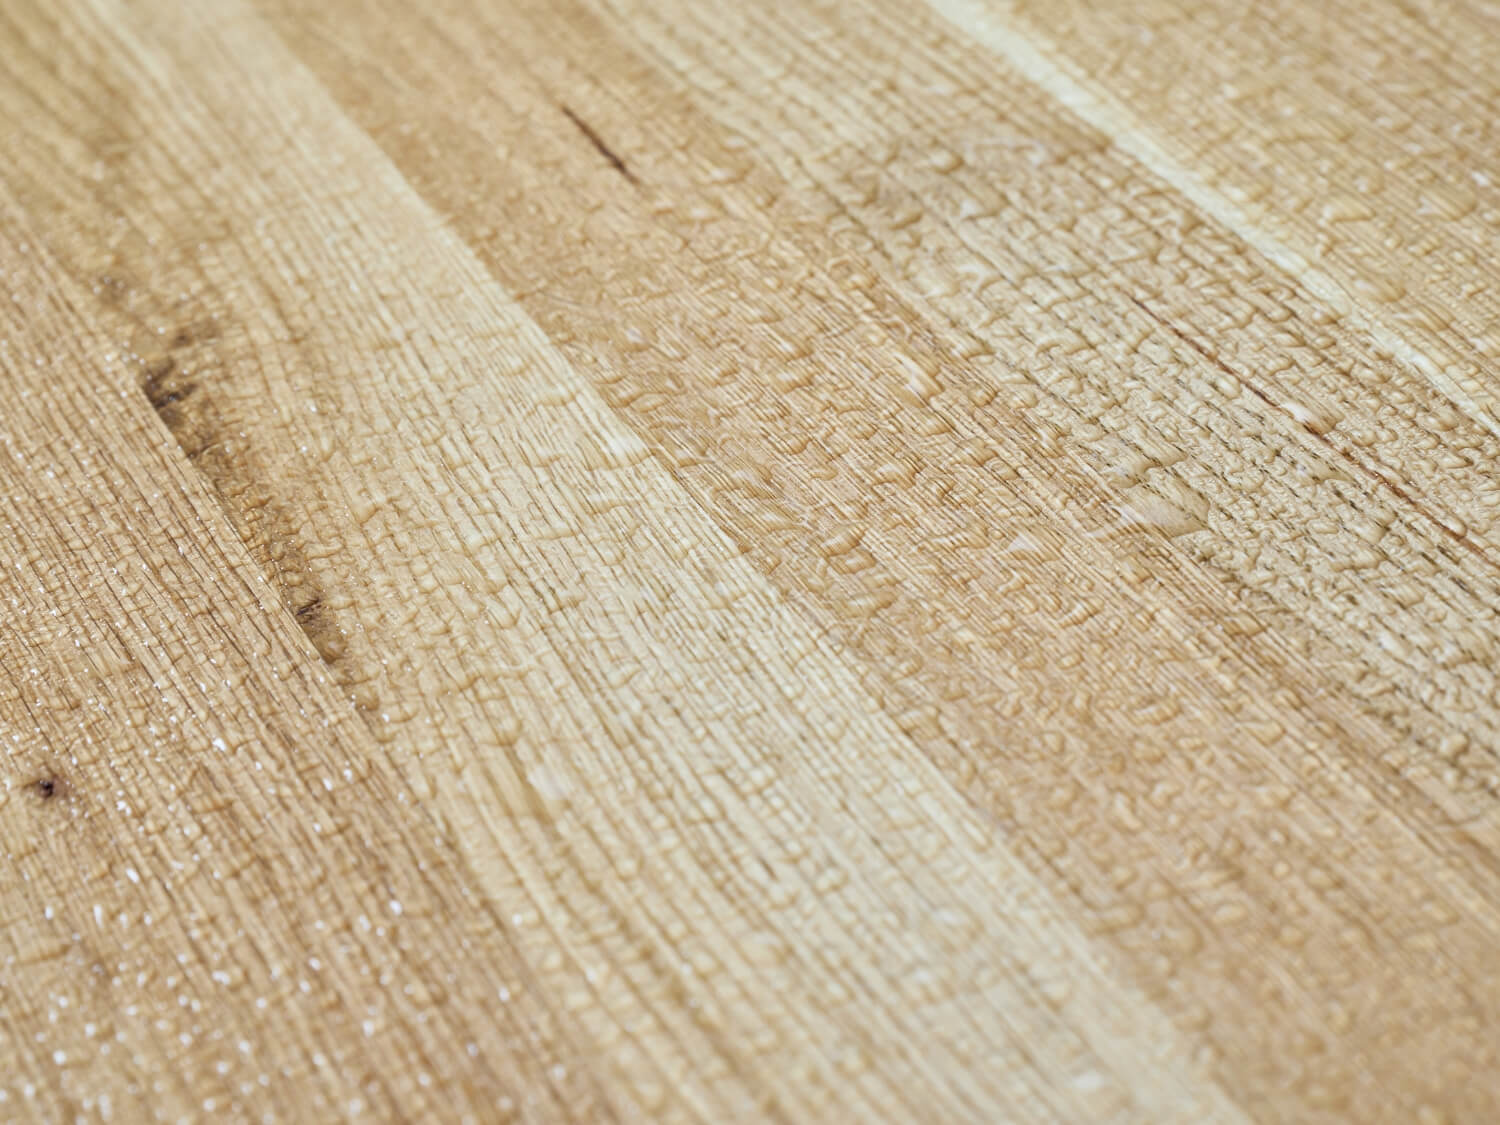 Set di design Lago con gocce d'acqua sulla superficie del legno. Lo smalto UV protegge il piano del tavolo da deformazioni e scolorimenti. Il set è quindi resistente agli agenti atmosferici e ignifugo.